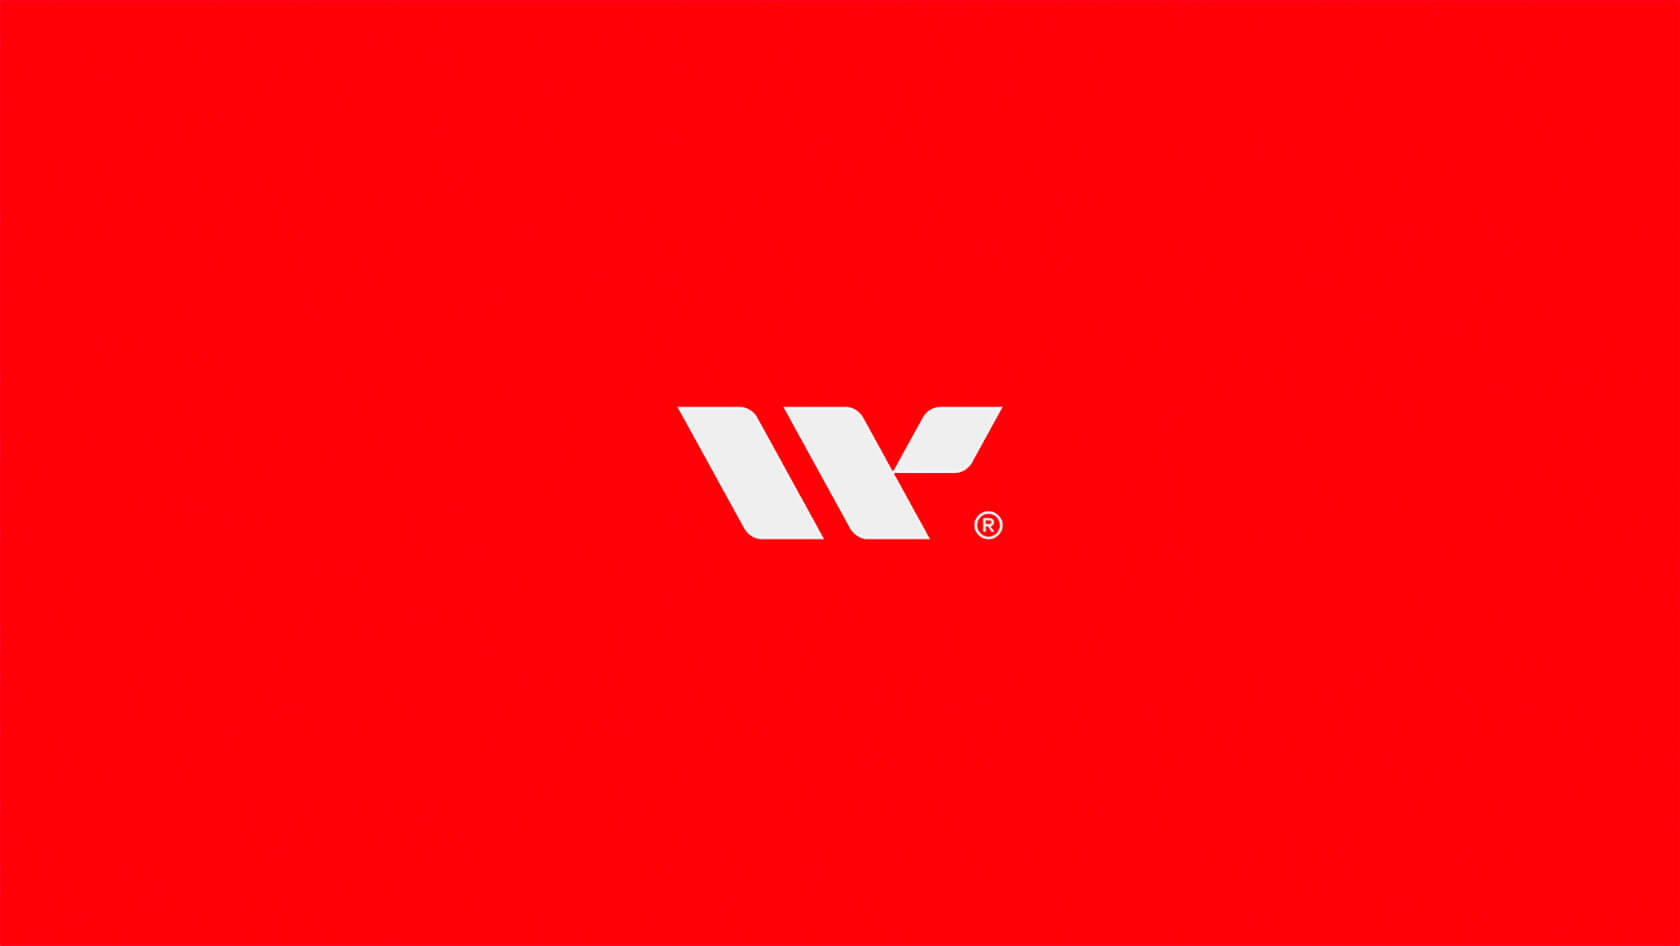 物流公司 Westerico品牌视觉设计